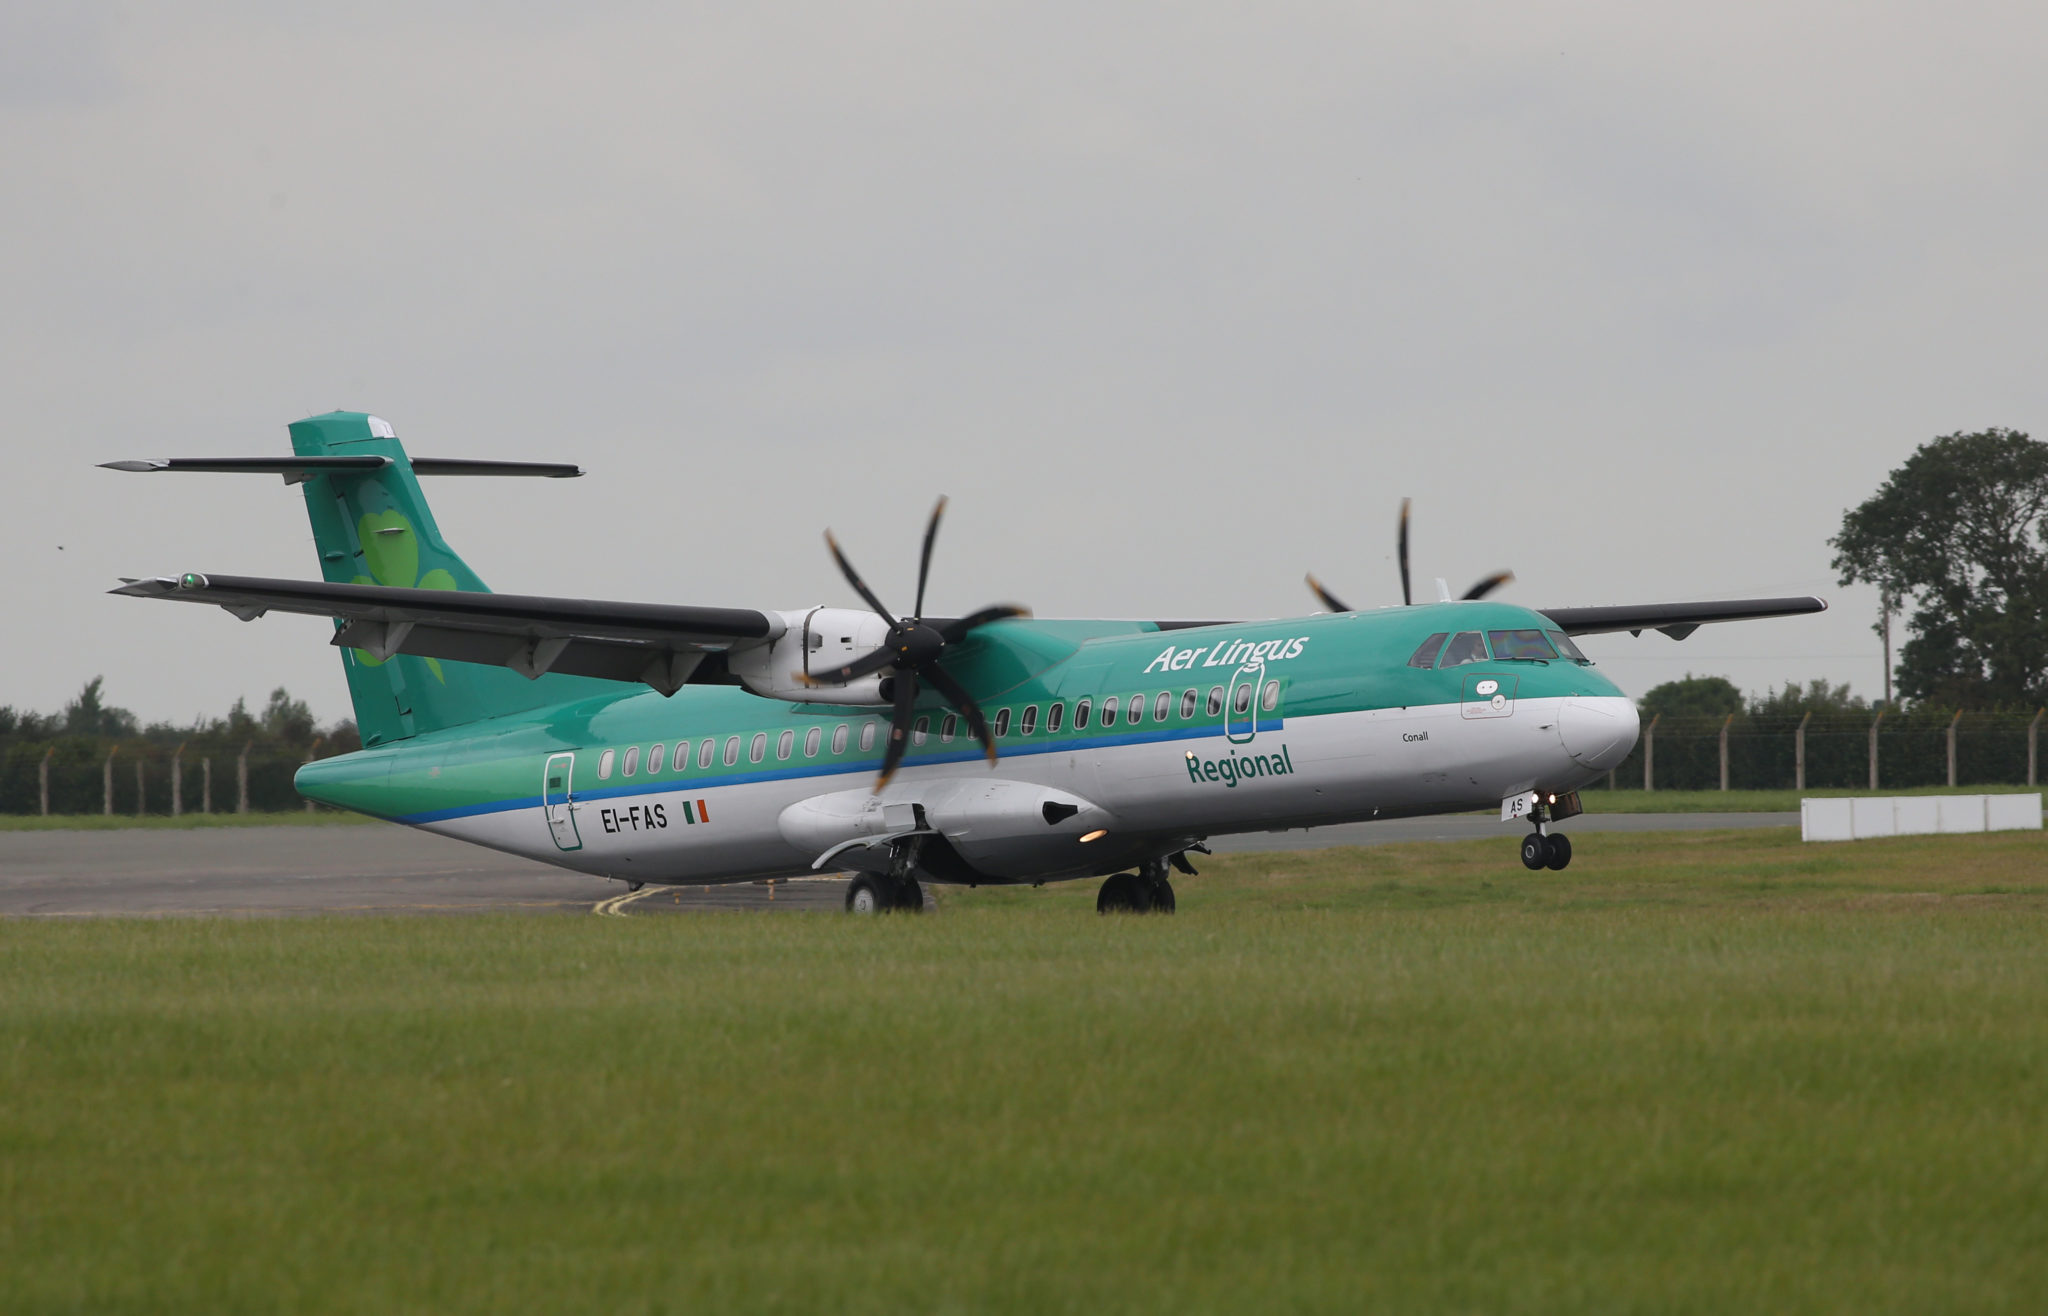 A 2014 file photo shows an Aer Lingus regional aircraft at Dublin Airport.